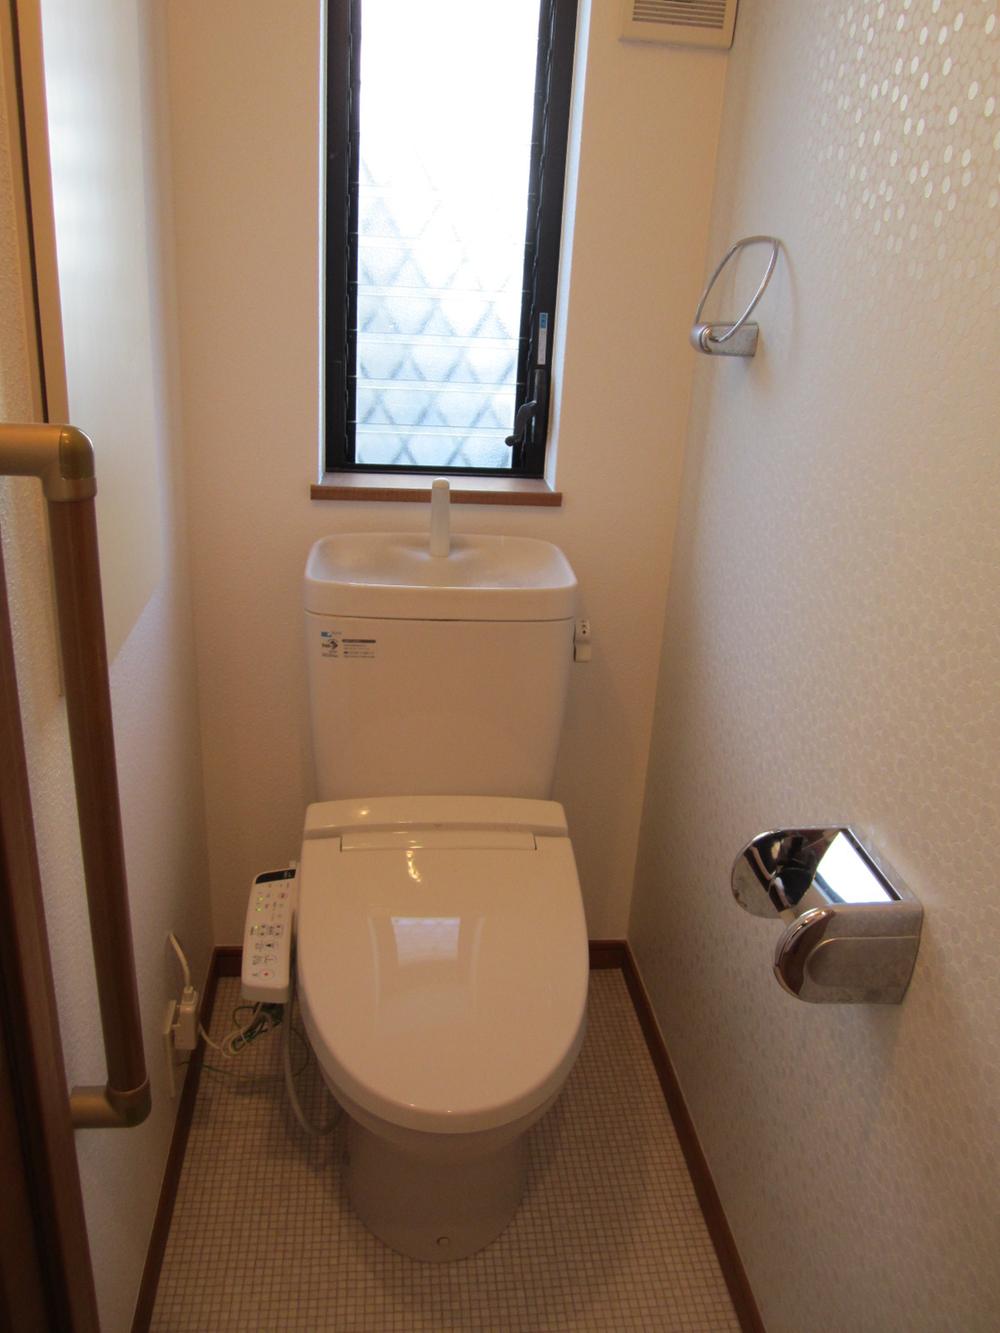 Toilet. Indoor (12 May 2013) Shooting